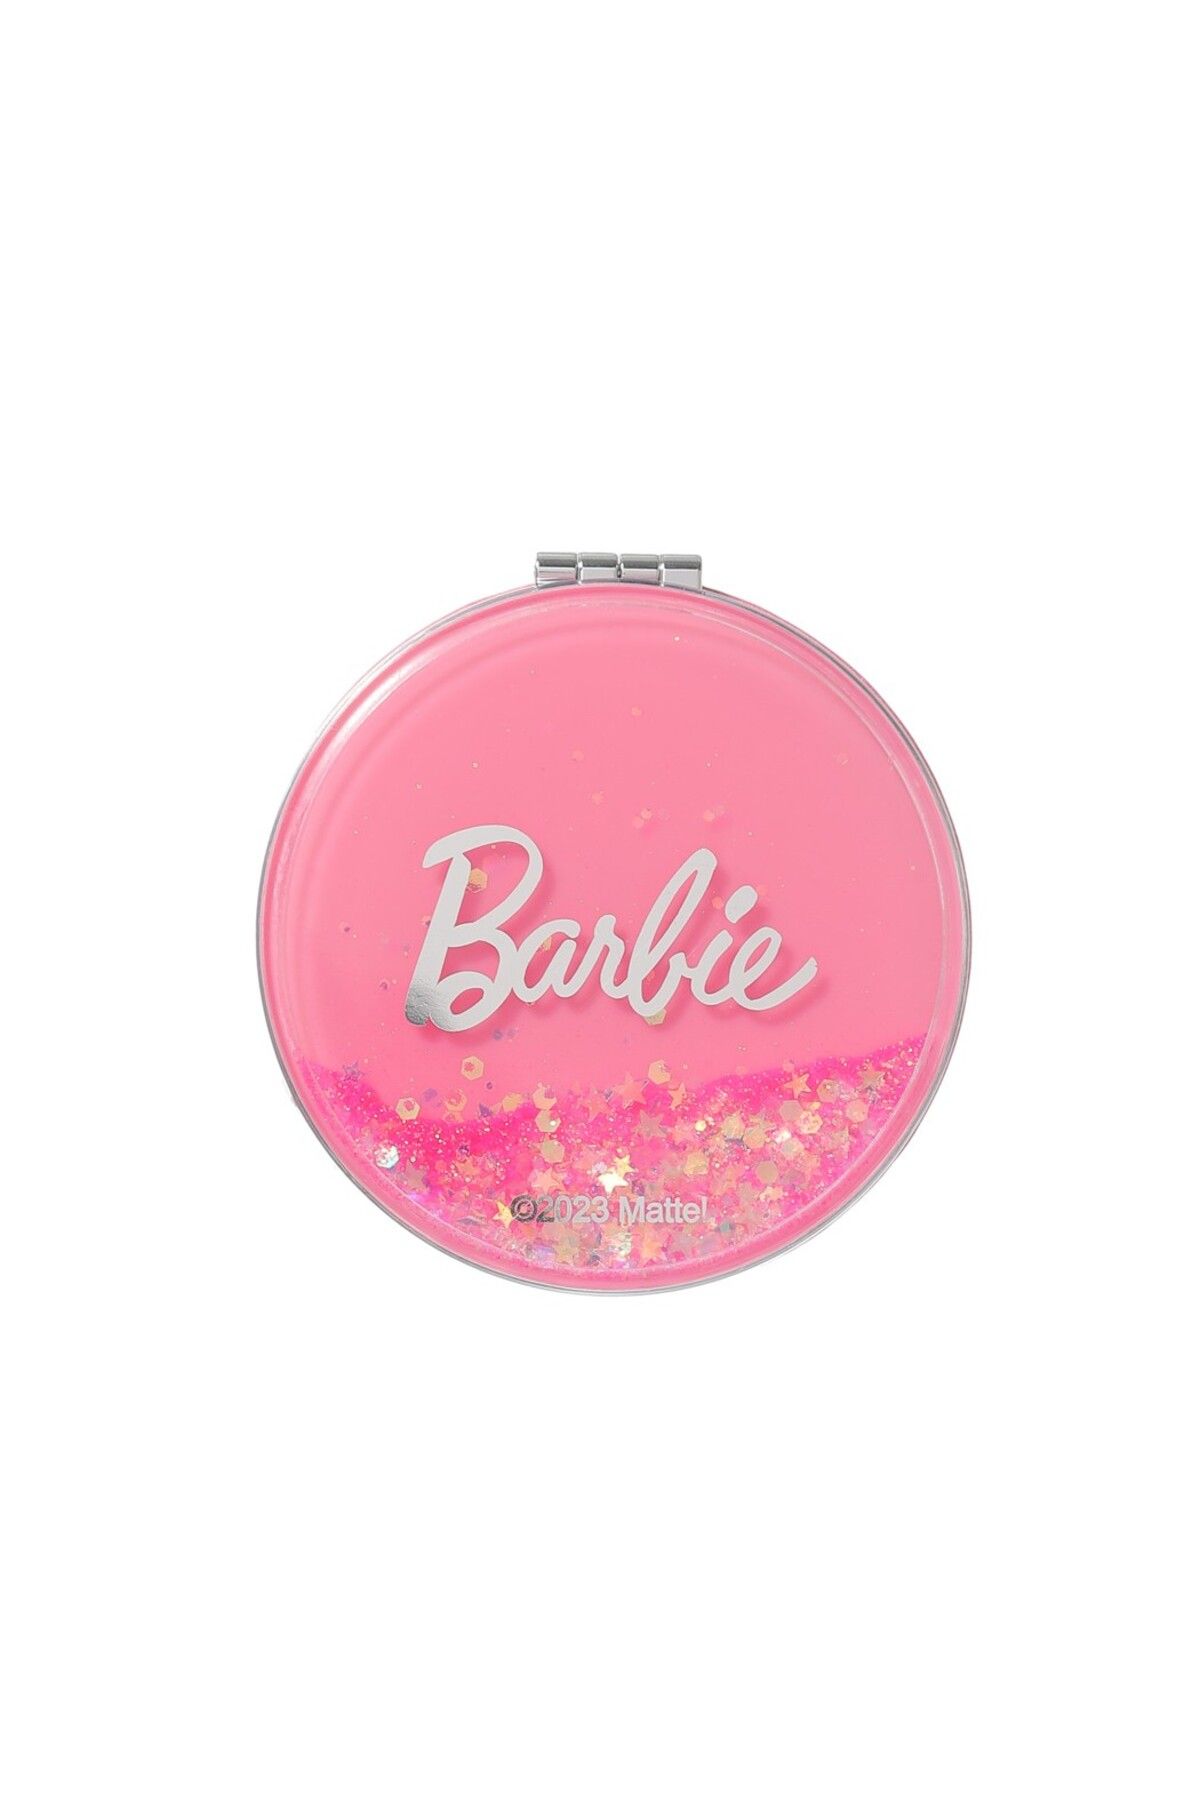 Miniso Barbie Lisanslı Kapaklı Cep Aynası